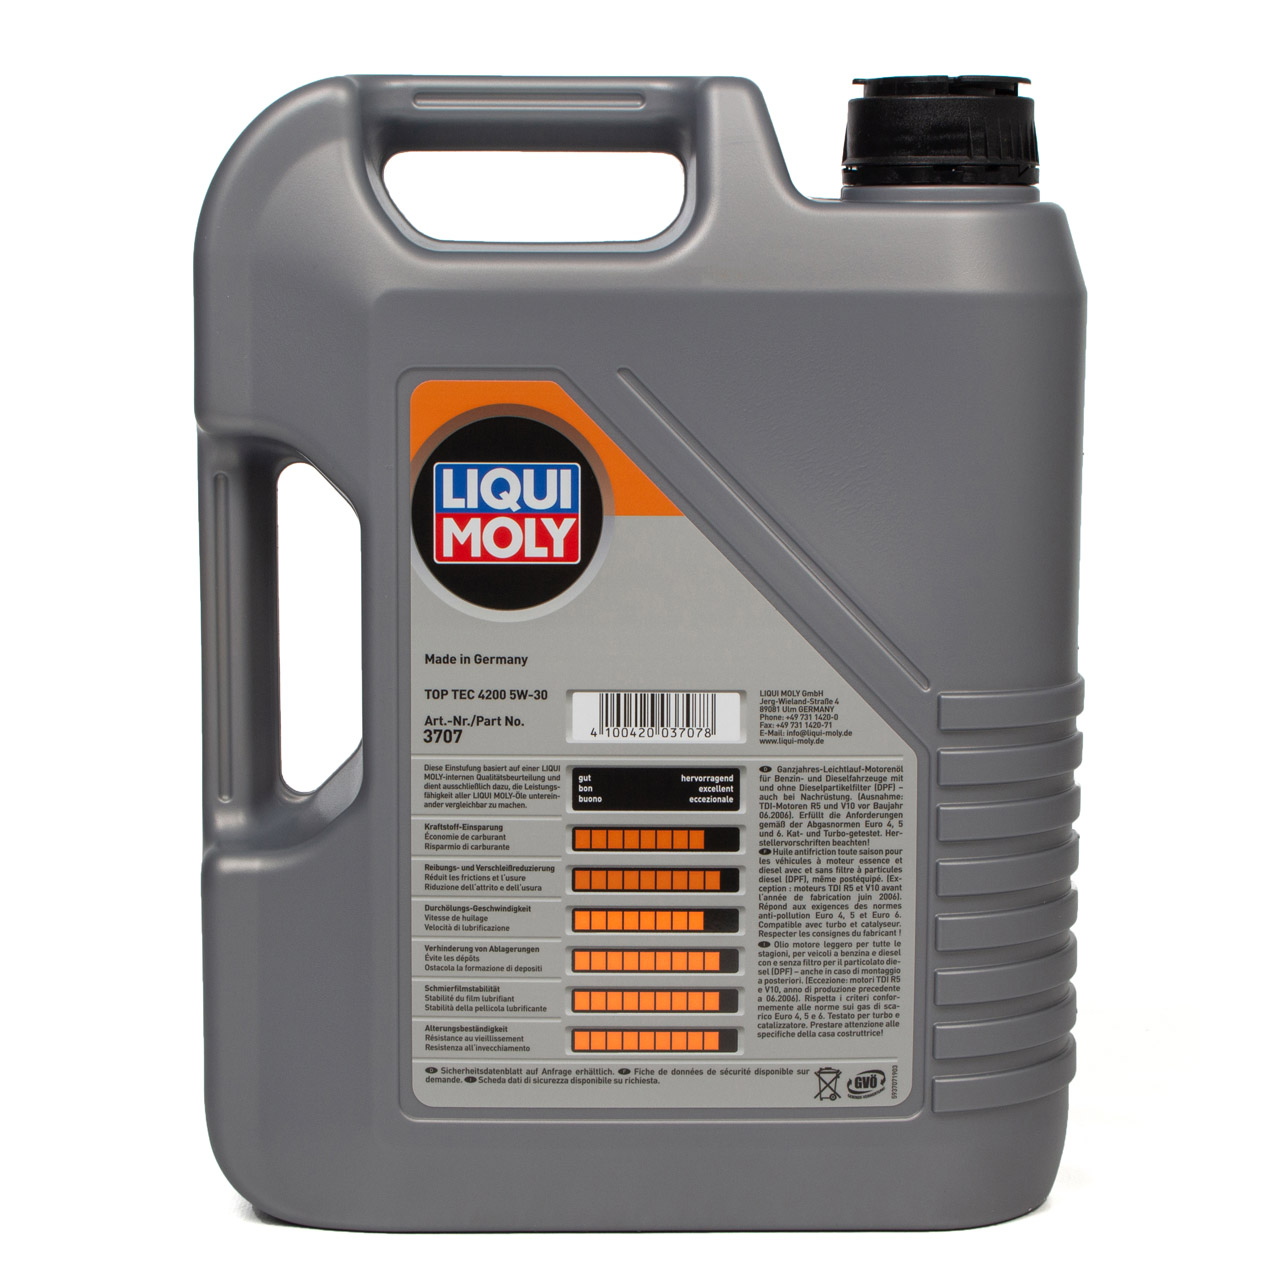 5L 5 Liter LIQUI MOLY Motoröl Öl TOP TEC 4200 5W30 5W-30 3707 VW 504.00 507.00